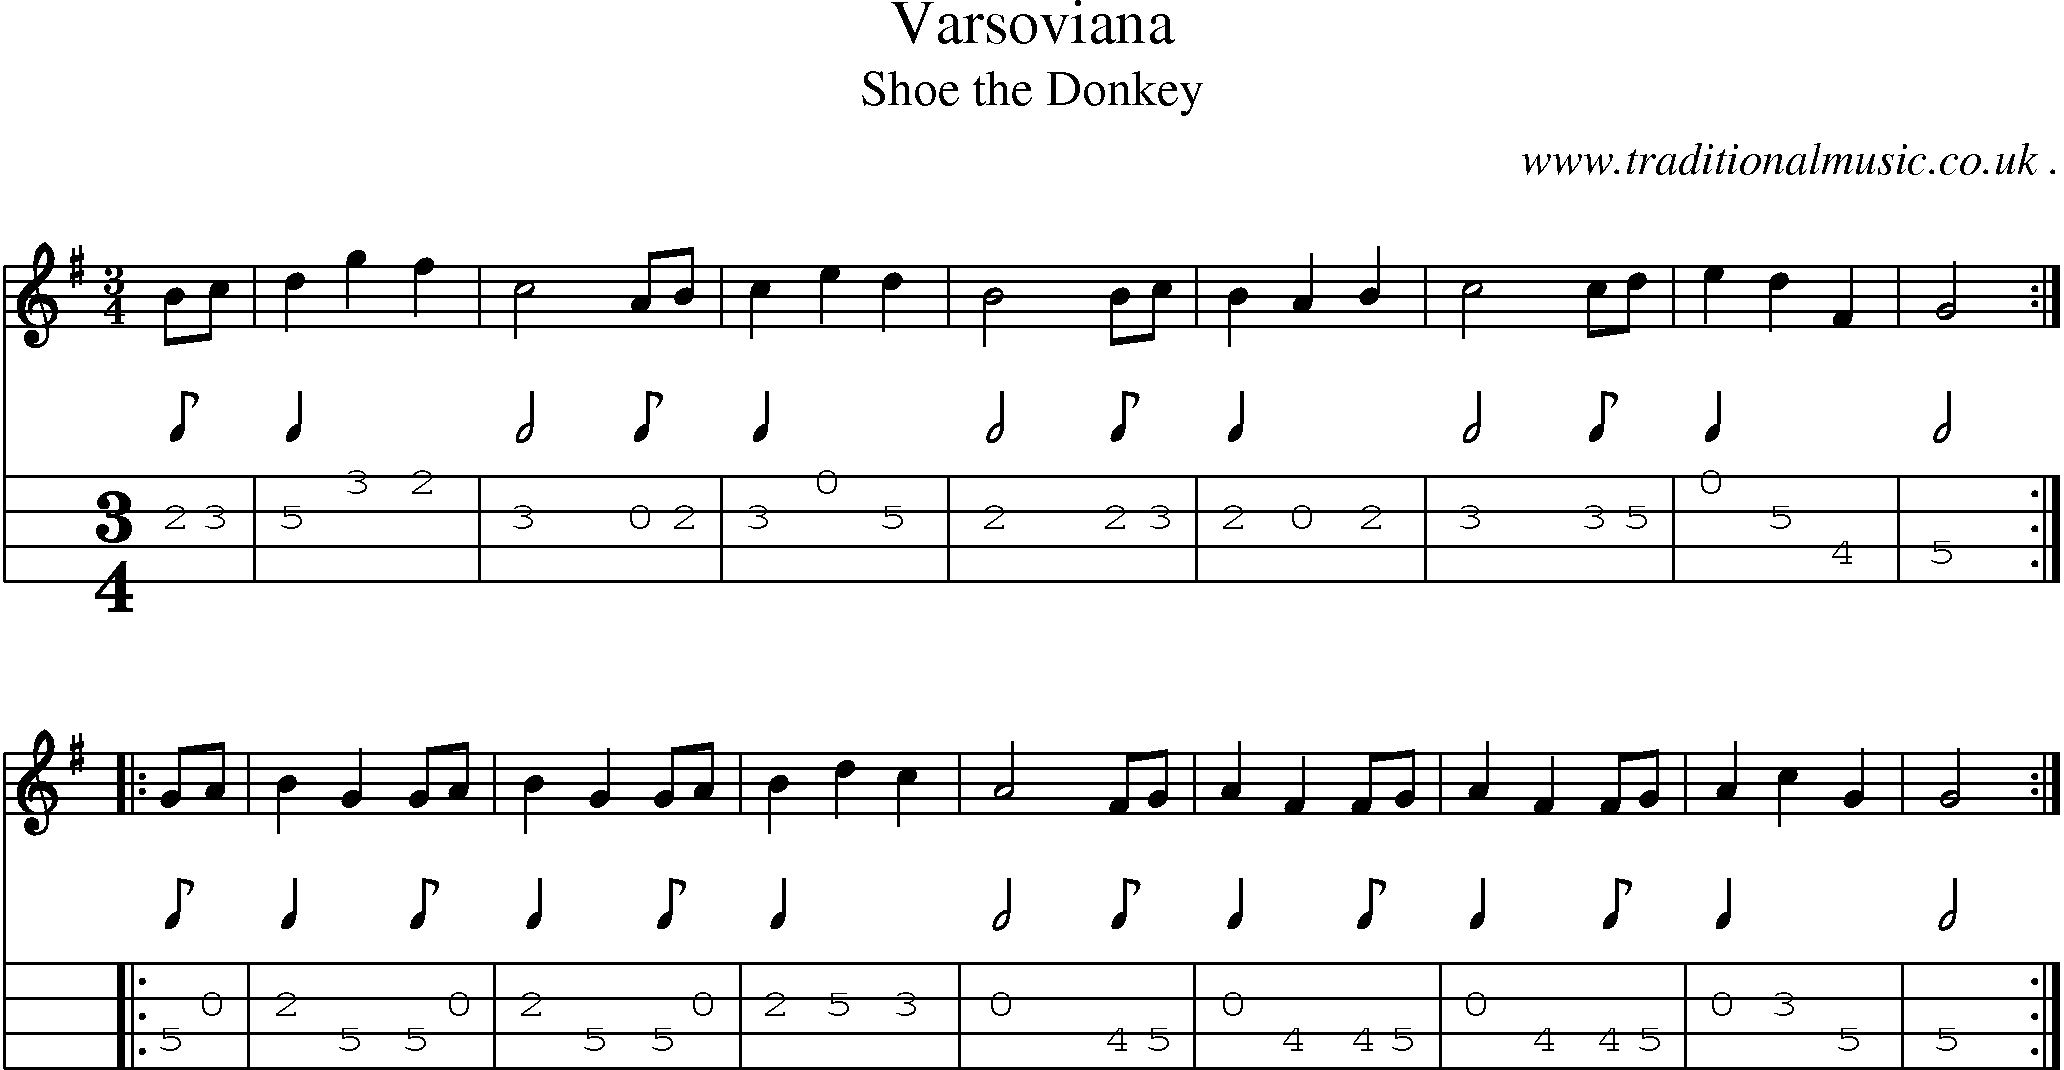 Sheet-Music and Mandolin Tabs for Varsoviana